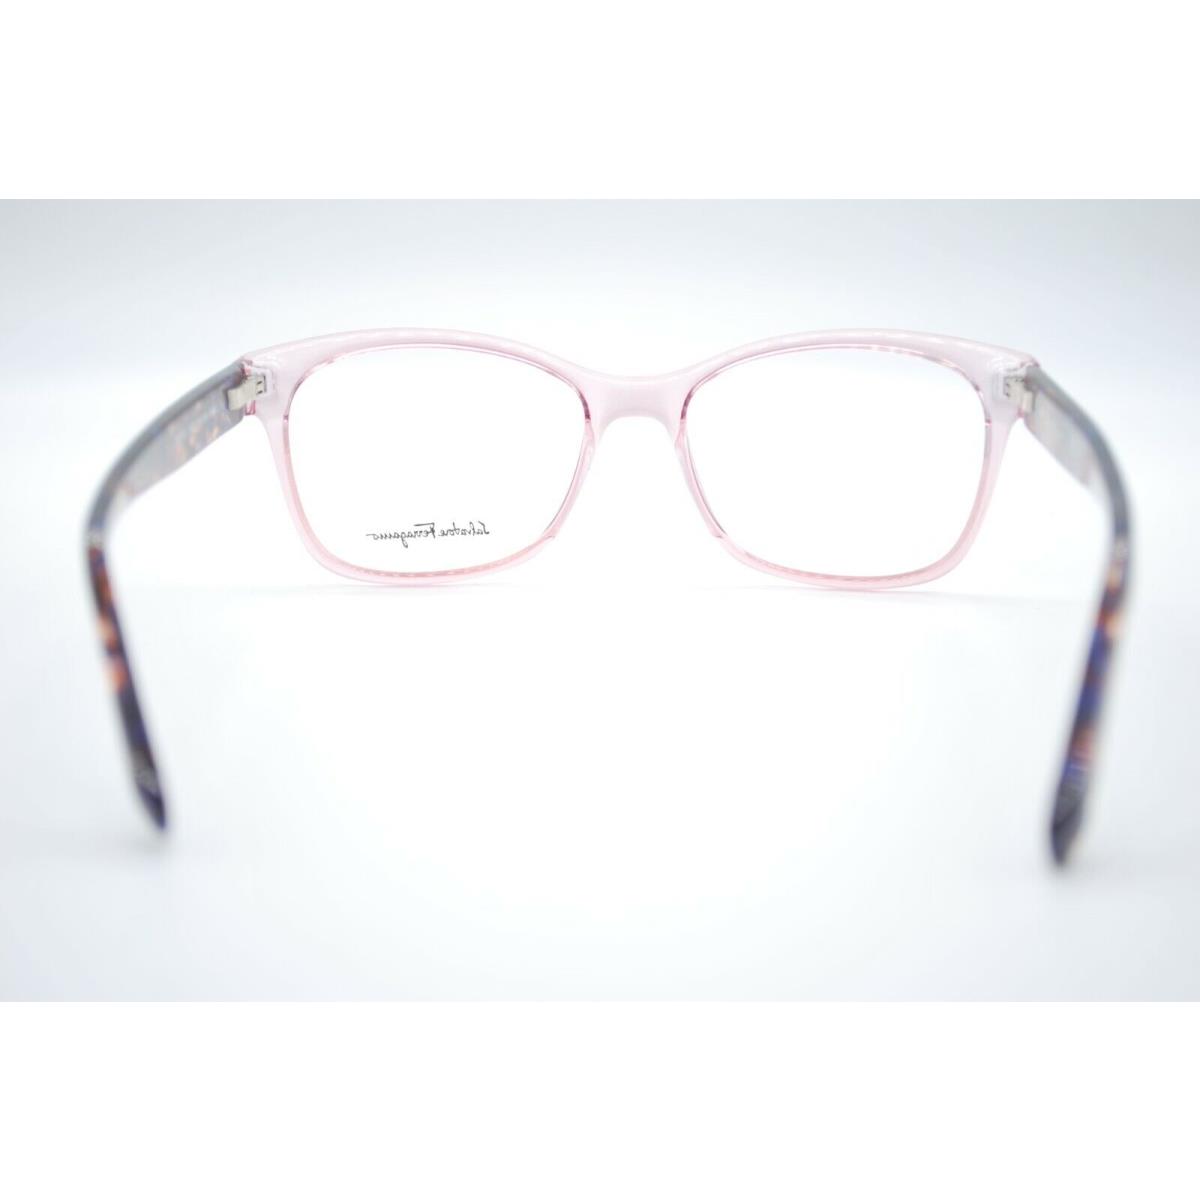 Salvatore Ferragamo eyeglasses  - ANTIQUE ROSE Frame 2